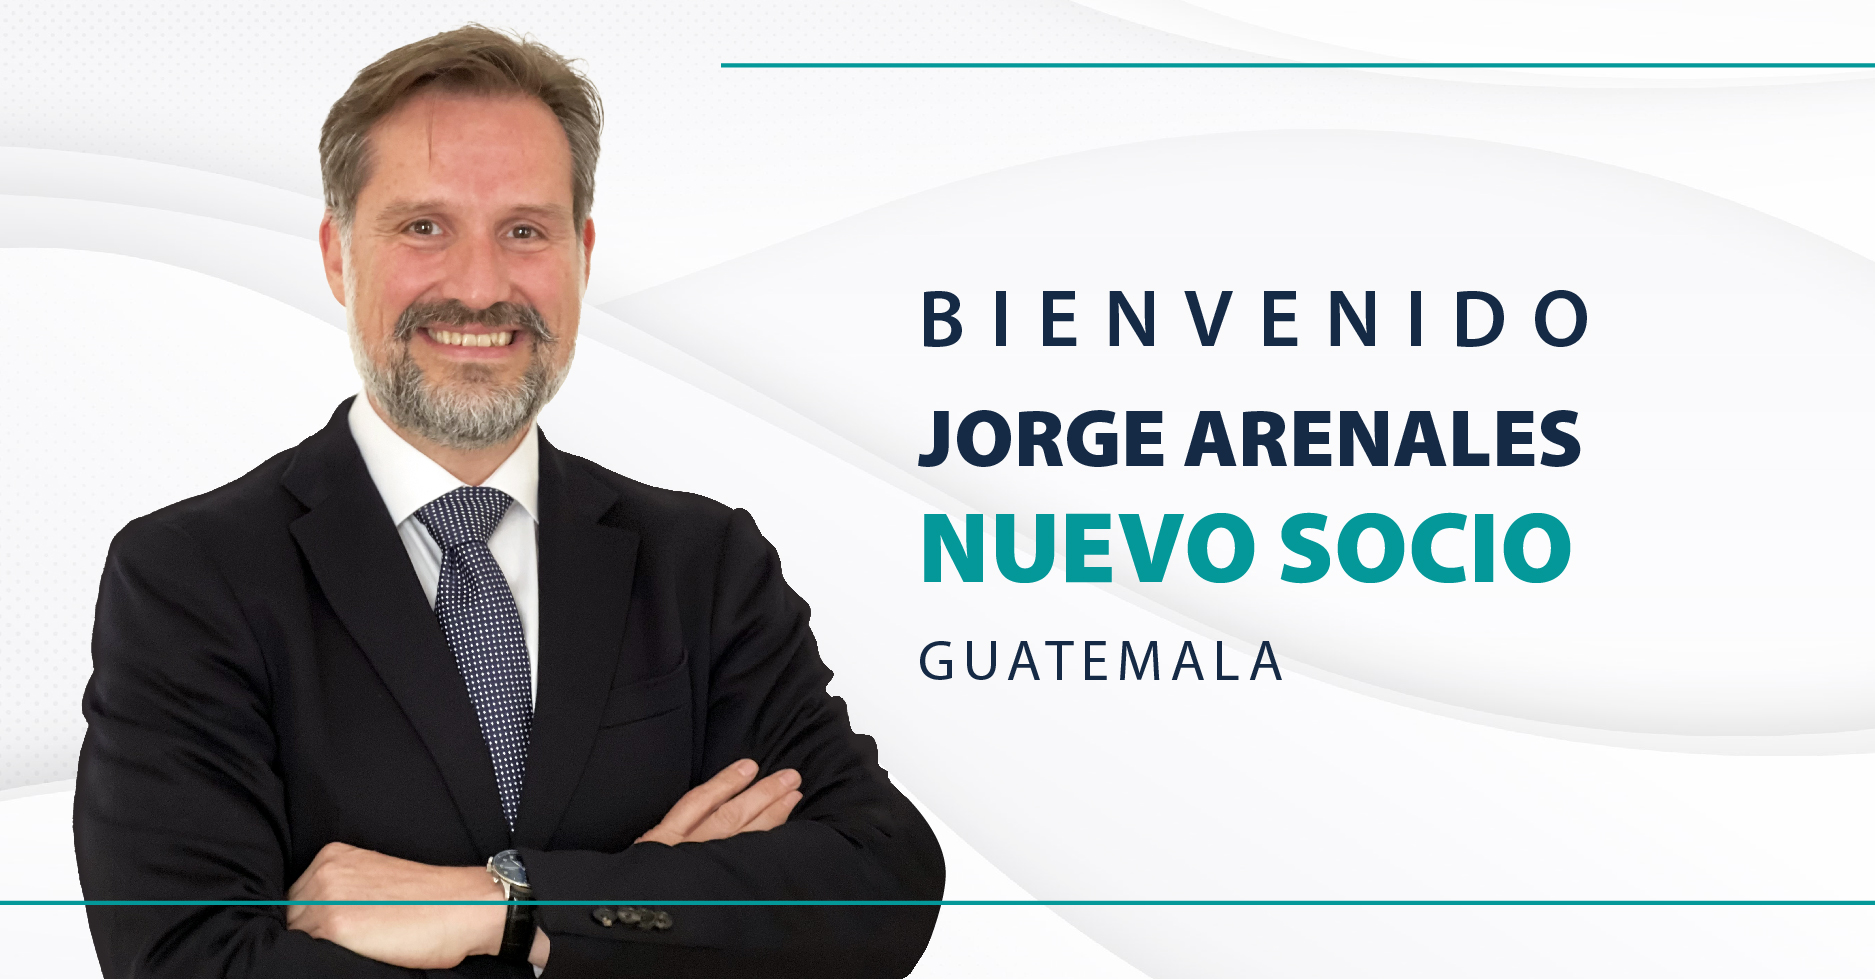 Jorge Arenales se incorpora a BLP, reforzando la experiencia de la Firma en materia Corporativa, Transaccional y Financiera